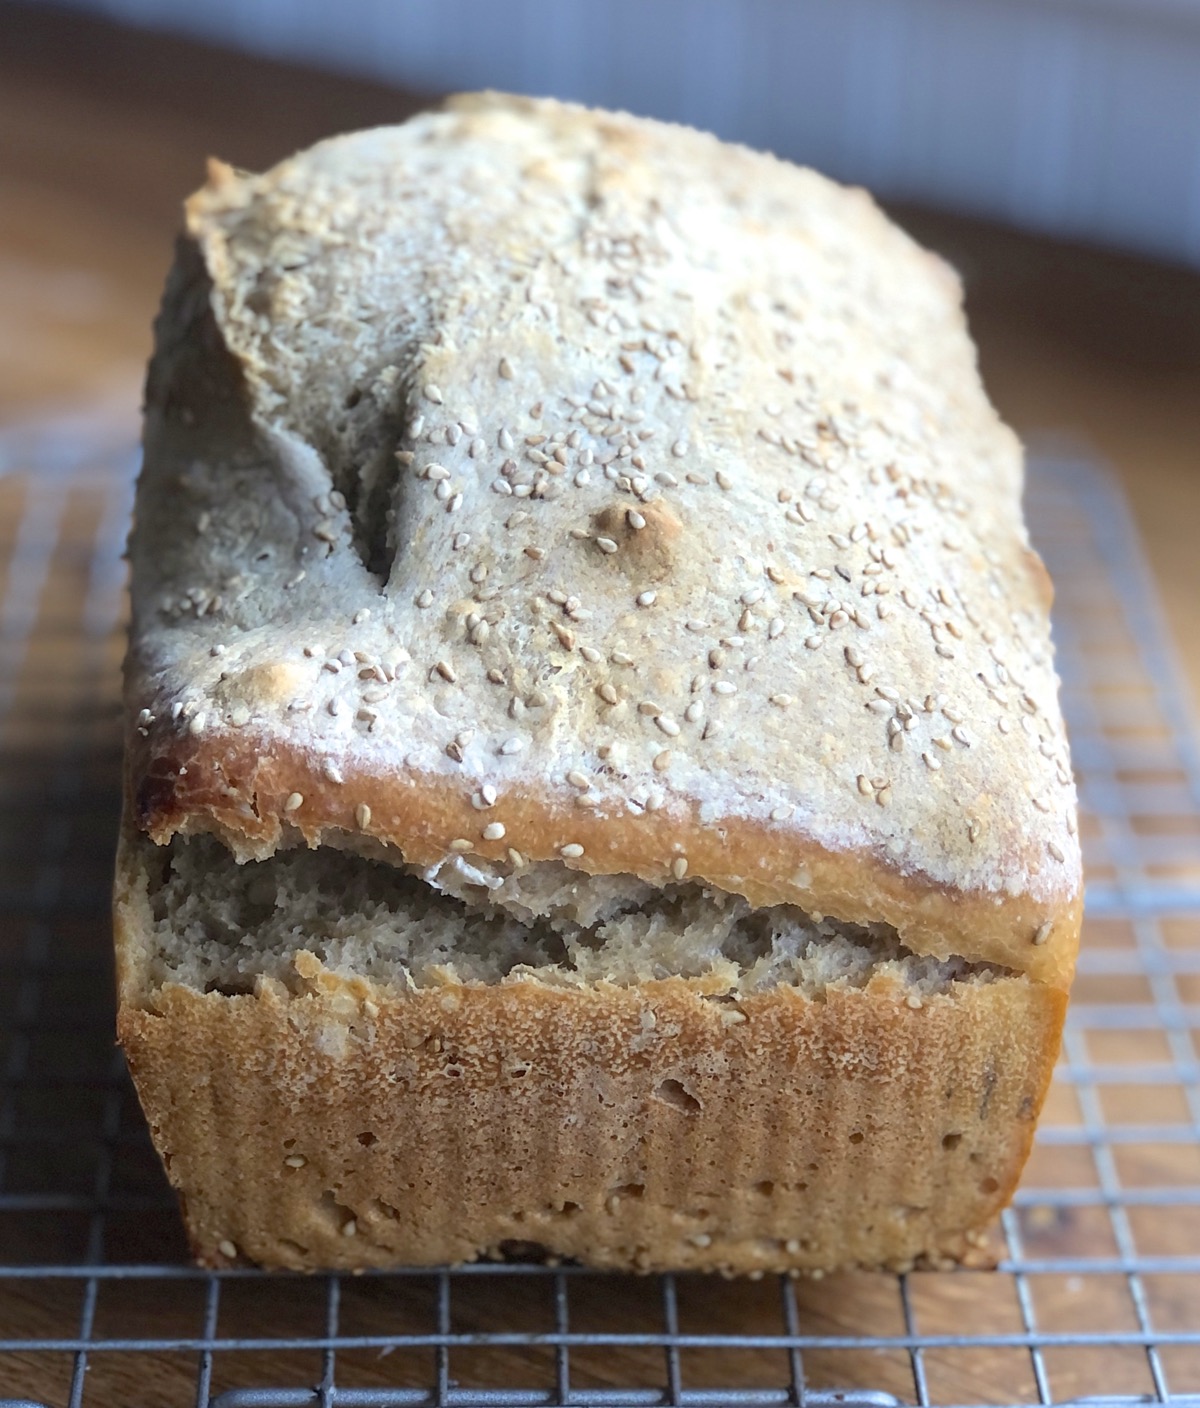 Sourdough bread baked in a 9" x 5" pan; sides split, top bumpy.